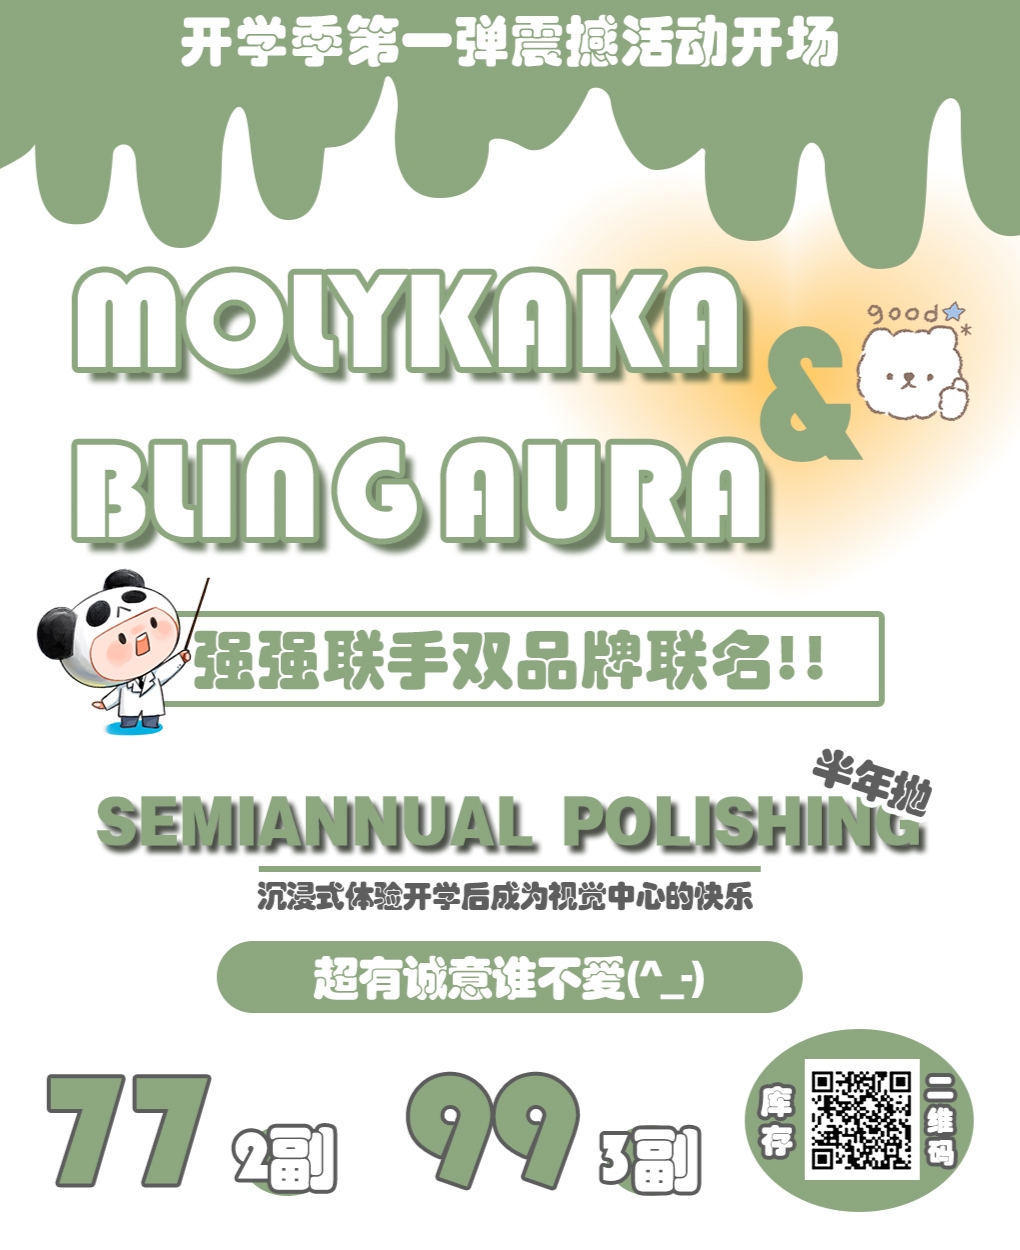 【半年抛】BLINGAURA·MOLYKAKA 开学季第一弹震撼活动开场